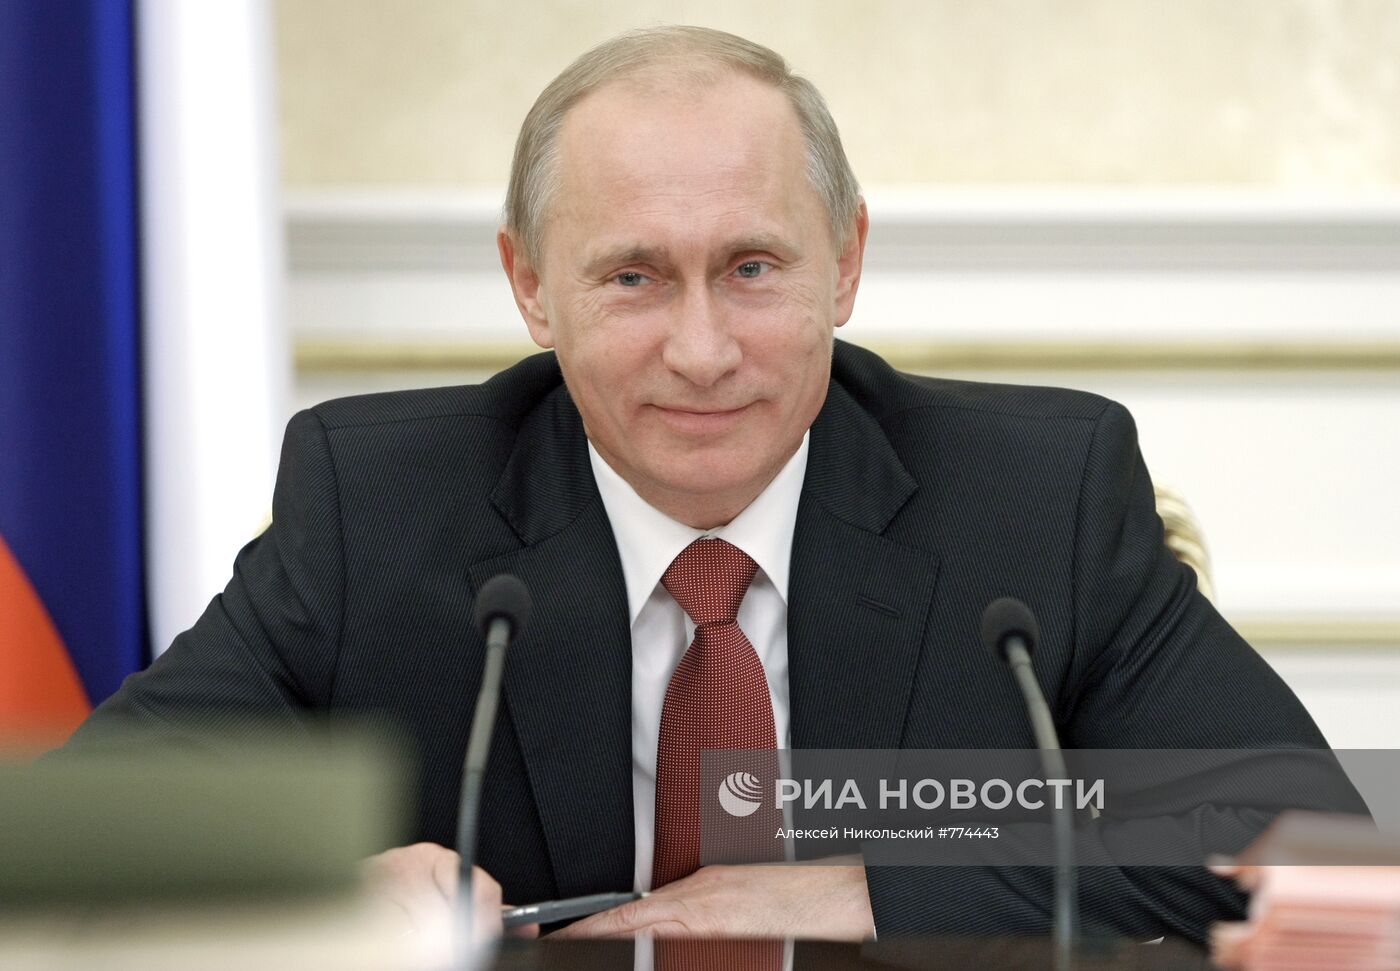 Владимир Путин провел заседание Президиума правительства РФ